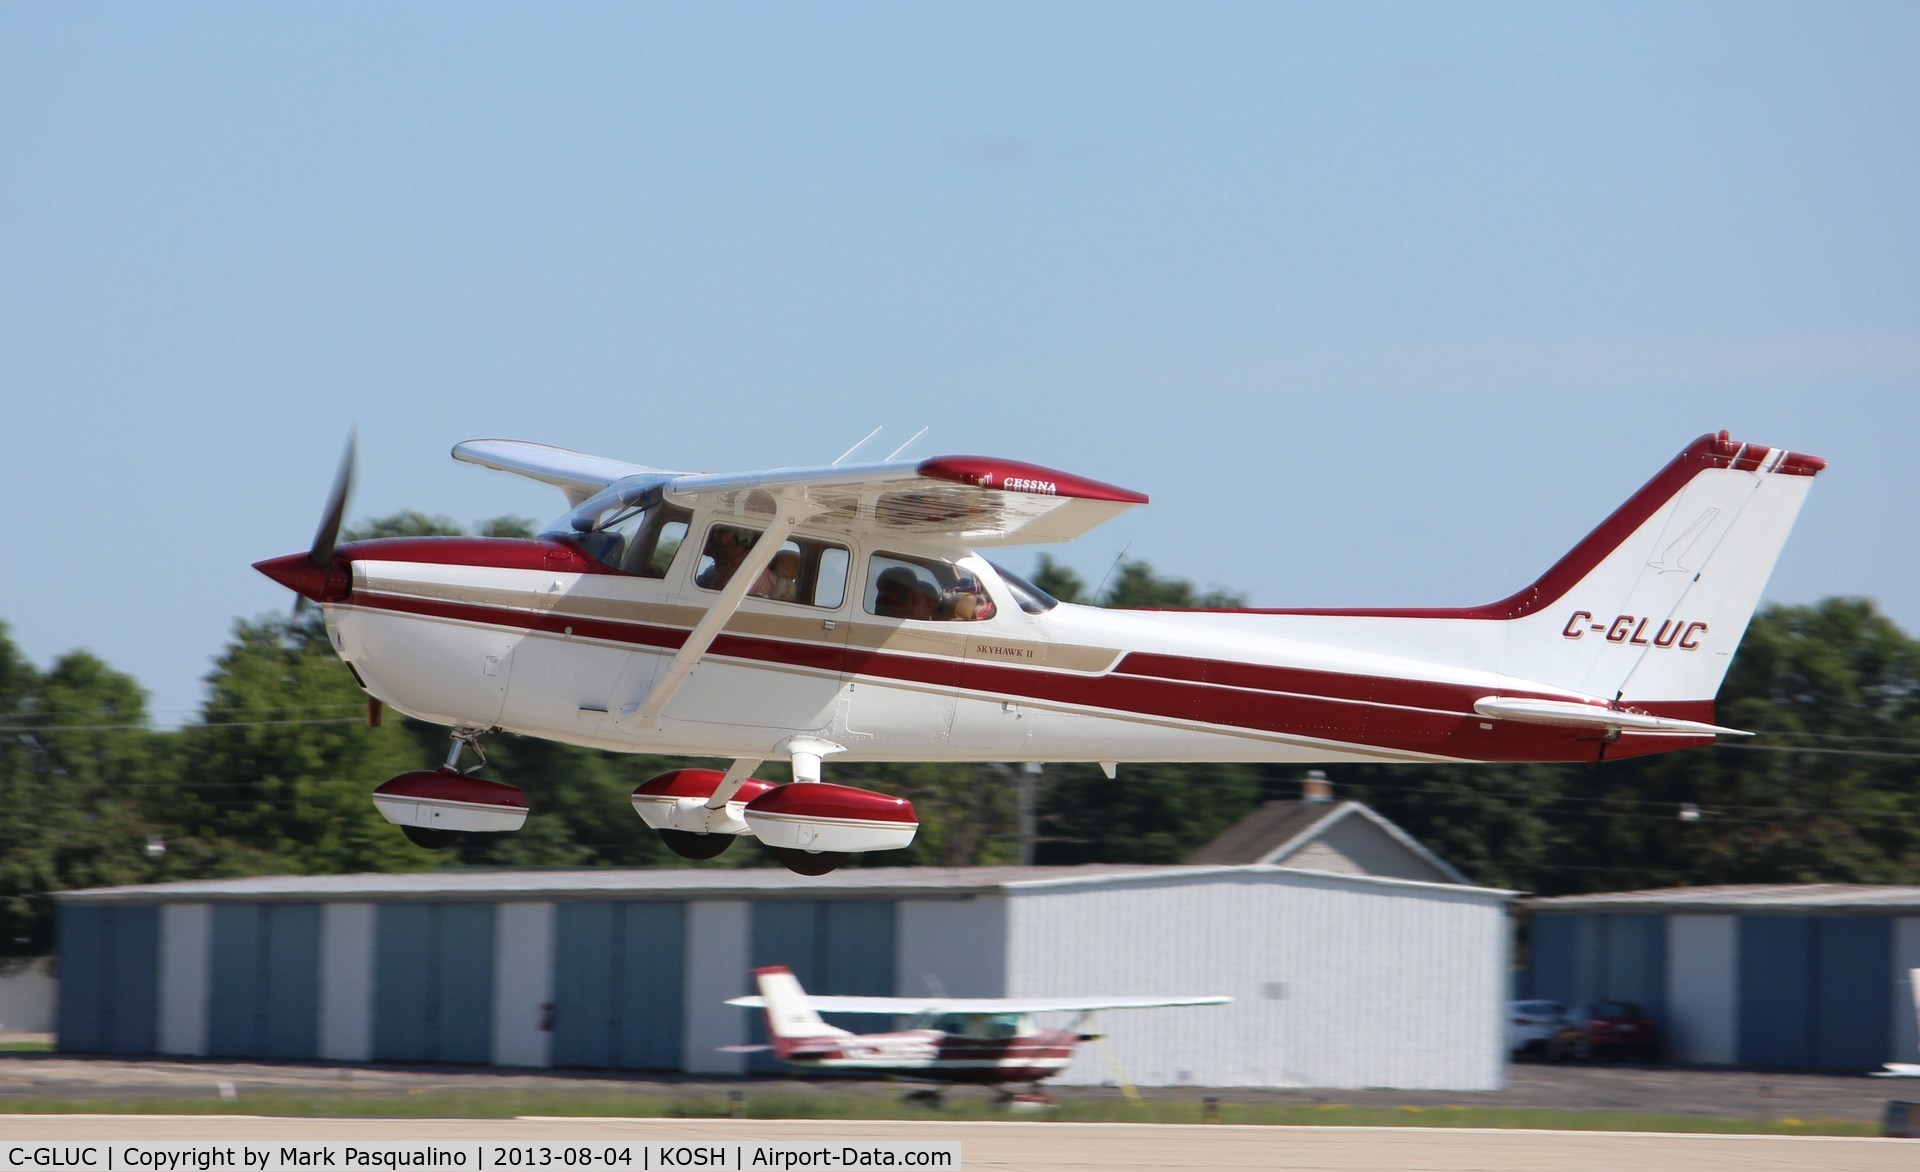 C-GLUC, 1975 Cessna 172M C/N 17265850, Cessna 172M